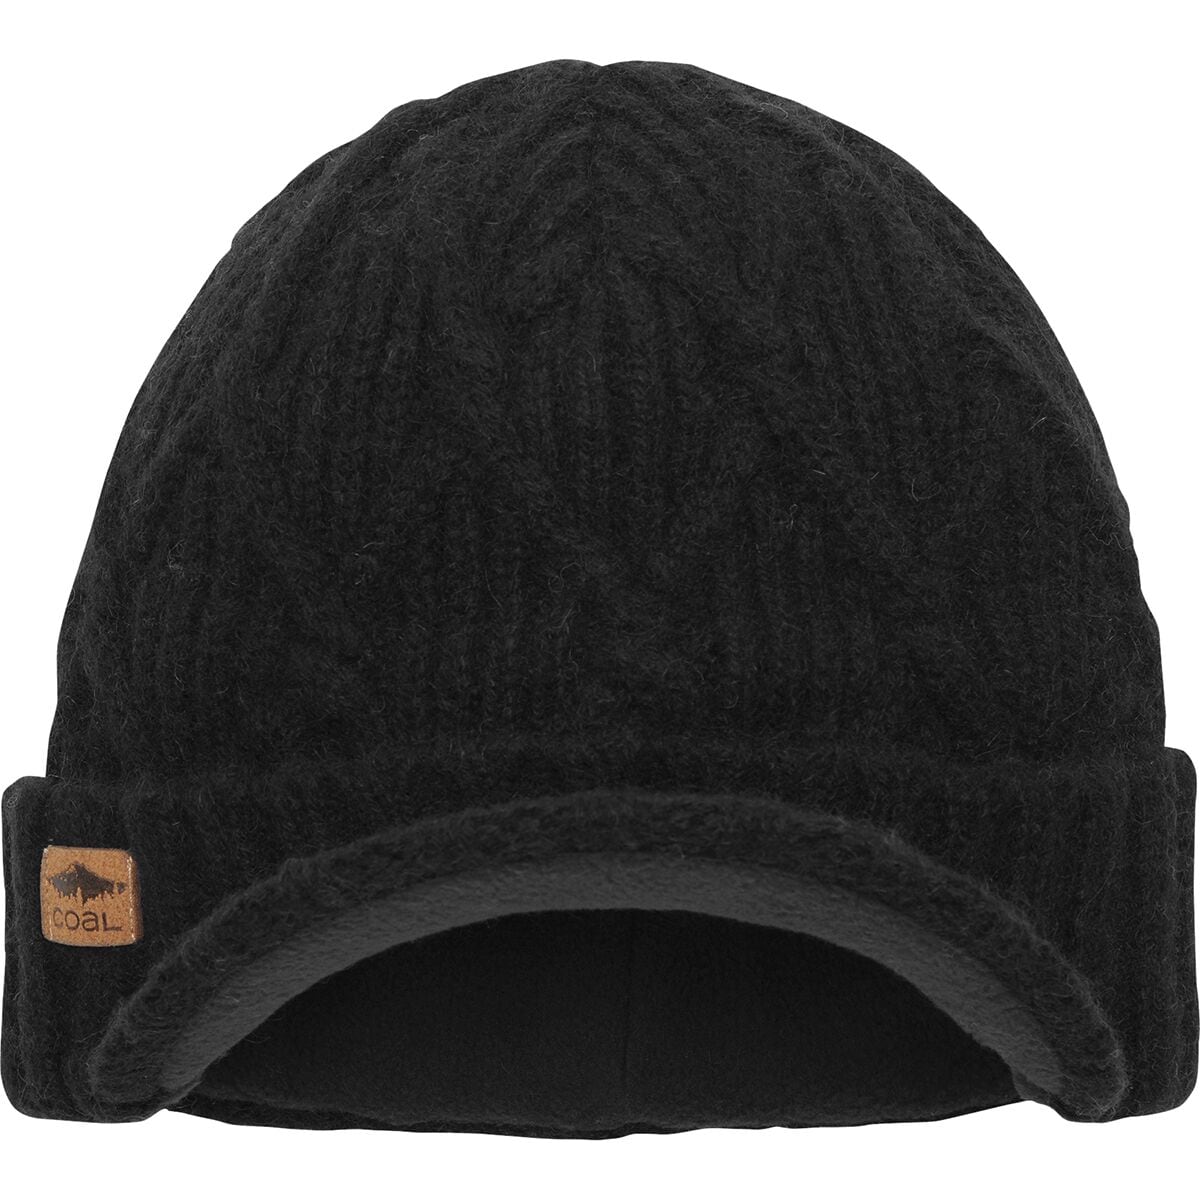 Юконская шапка с полями Coal Headwear, черный